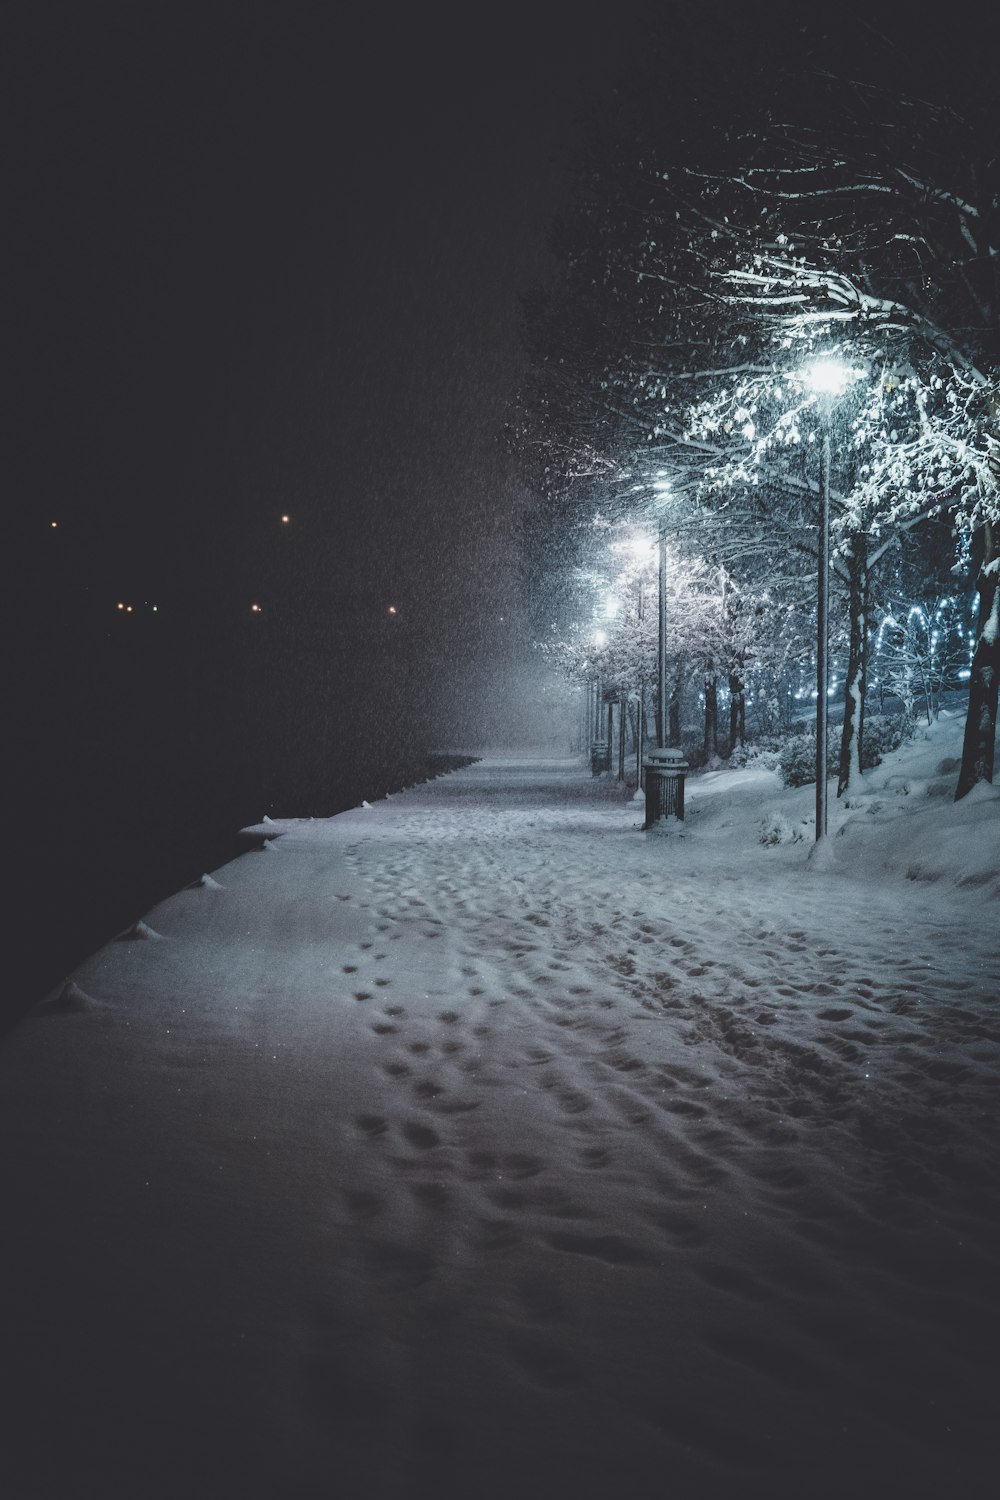 Carretera cubierta de nieve durante la noche